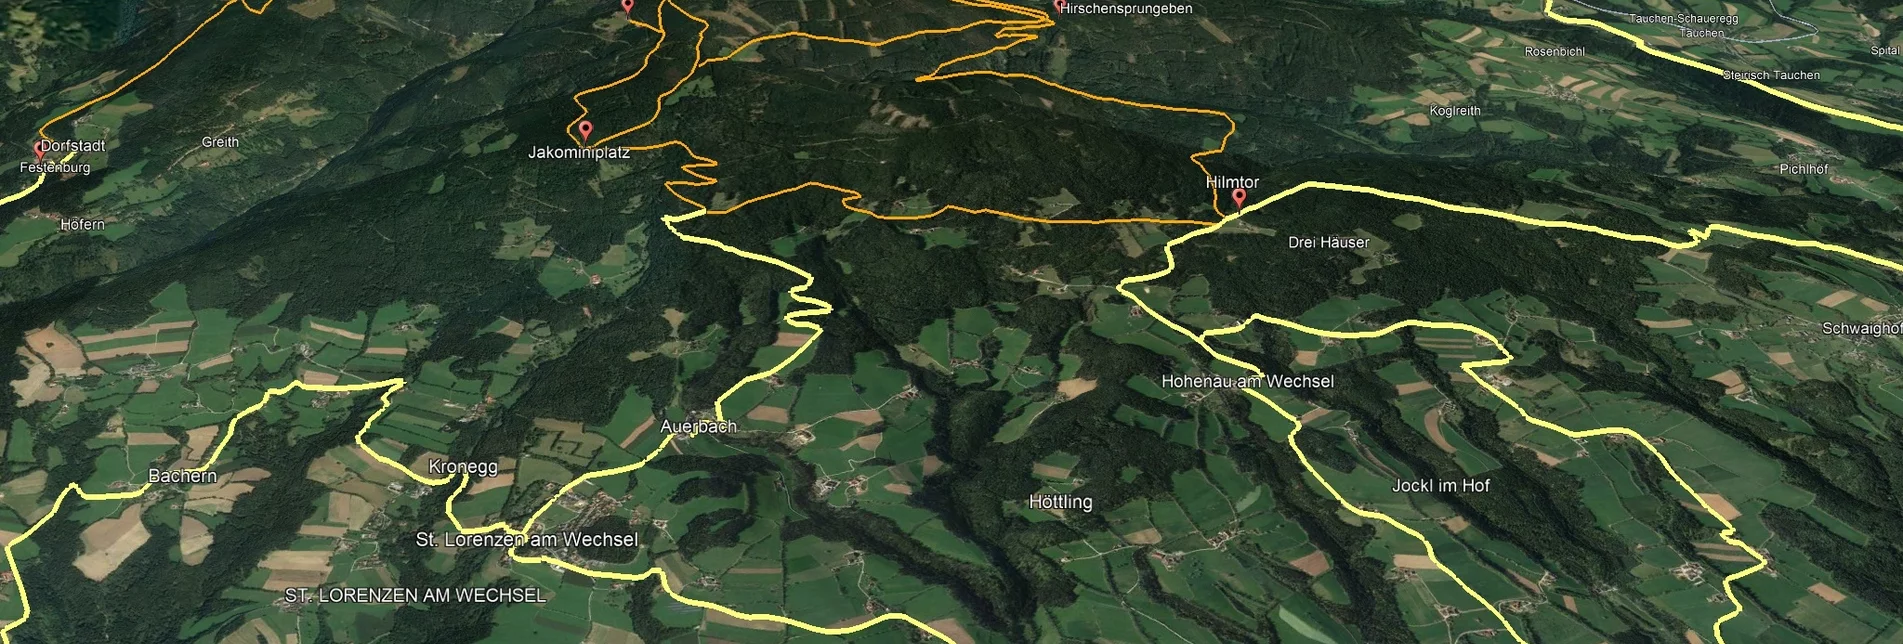 Mountain Biking PREVIEW Styrian Wexl Trails - Hilmtor Route - Touren-Impression #1 | © Verein Tourismusentwicklung Steirischer Wechsel